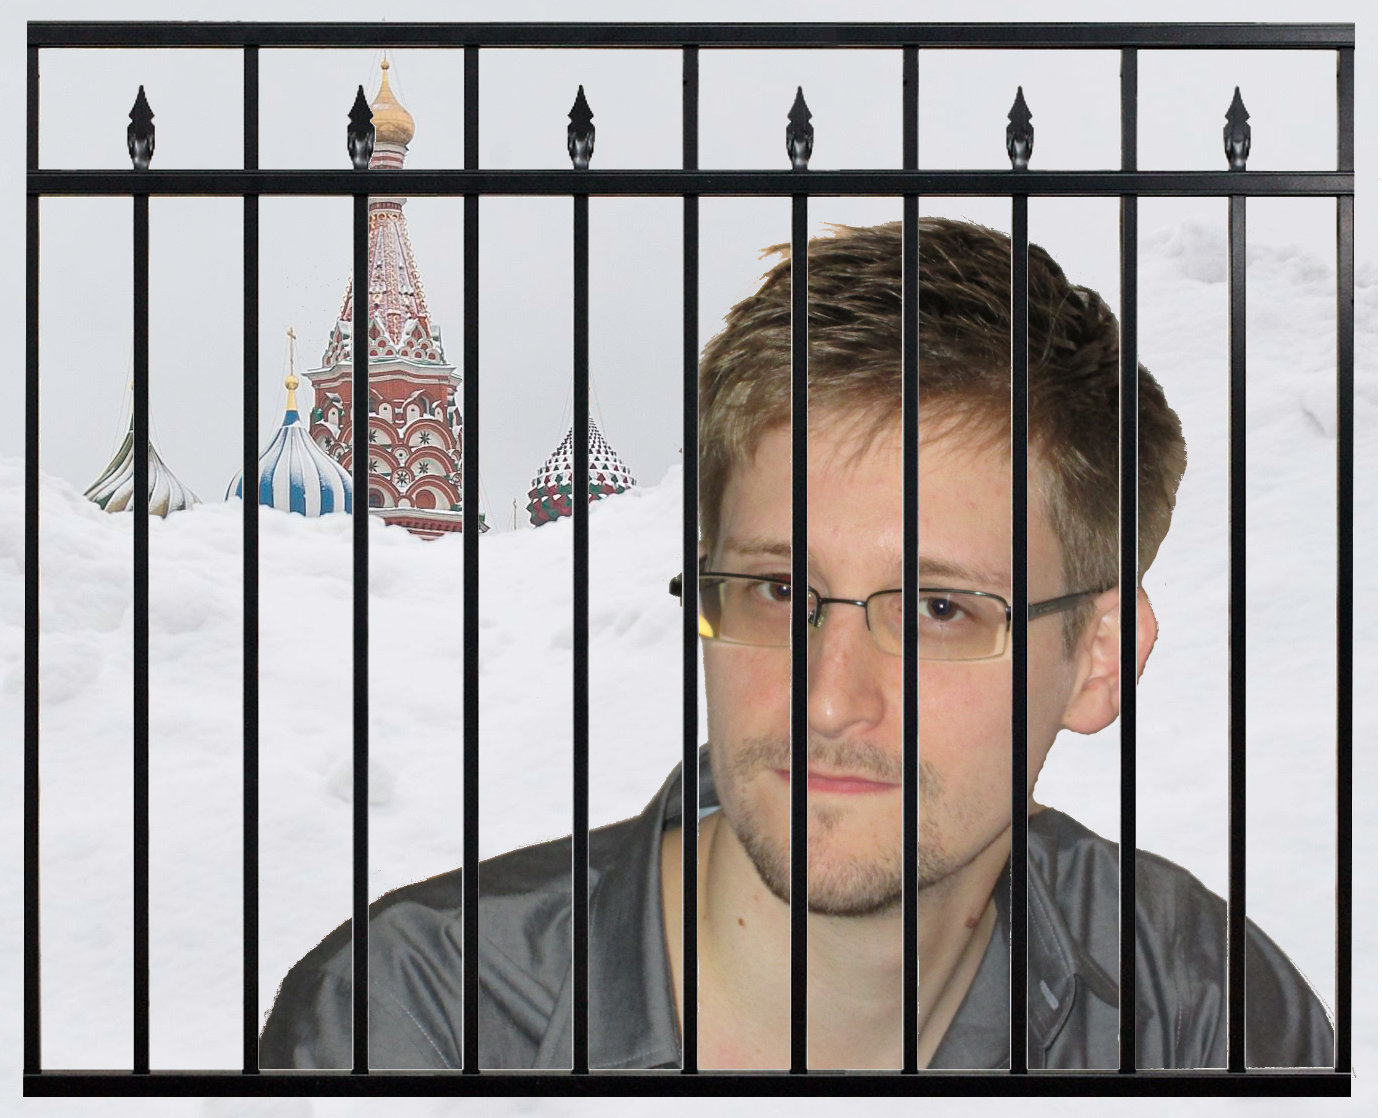 Ballad of Edward Snowden